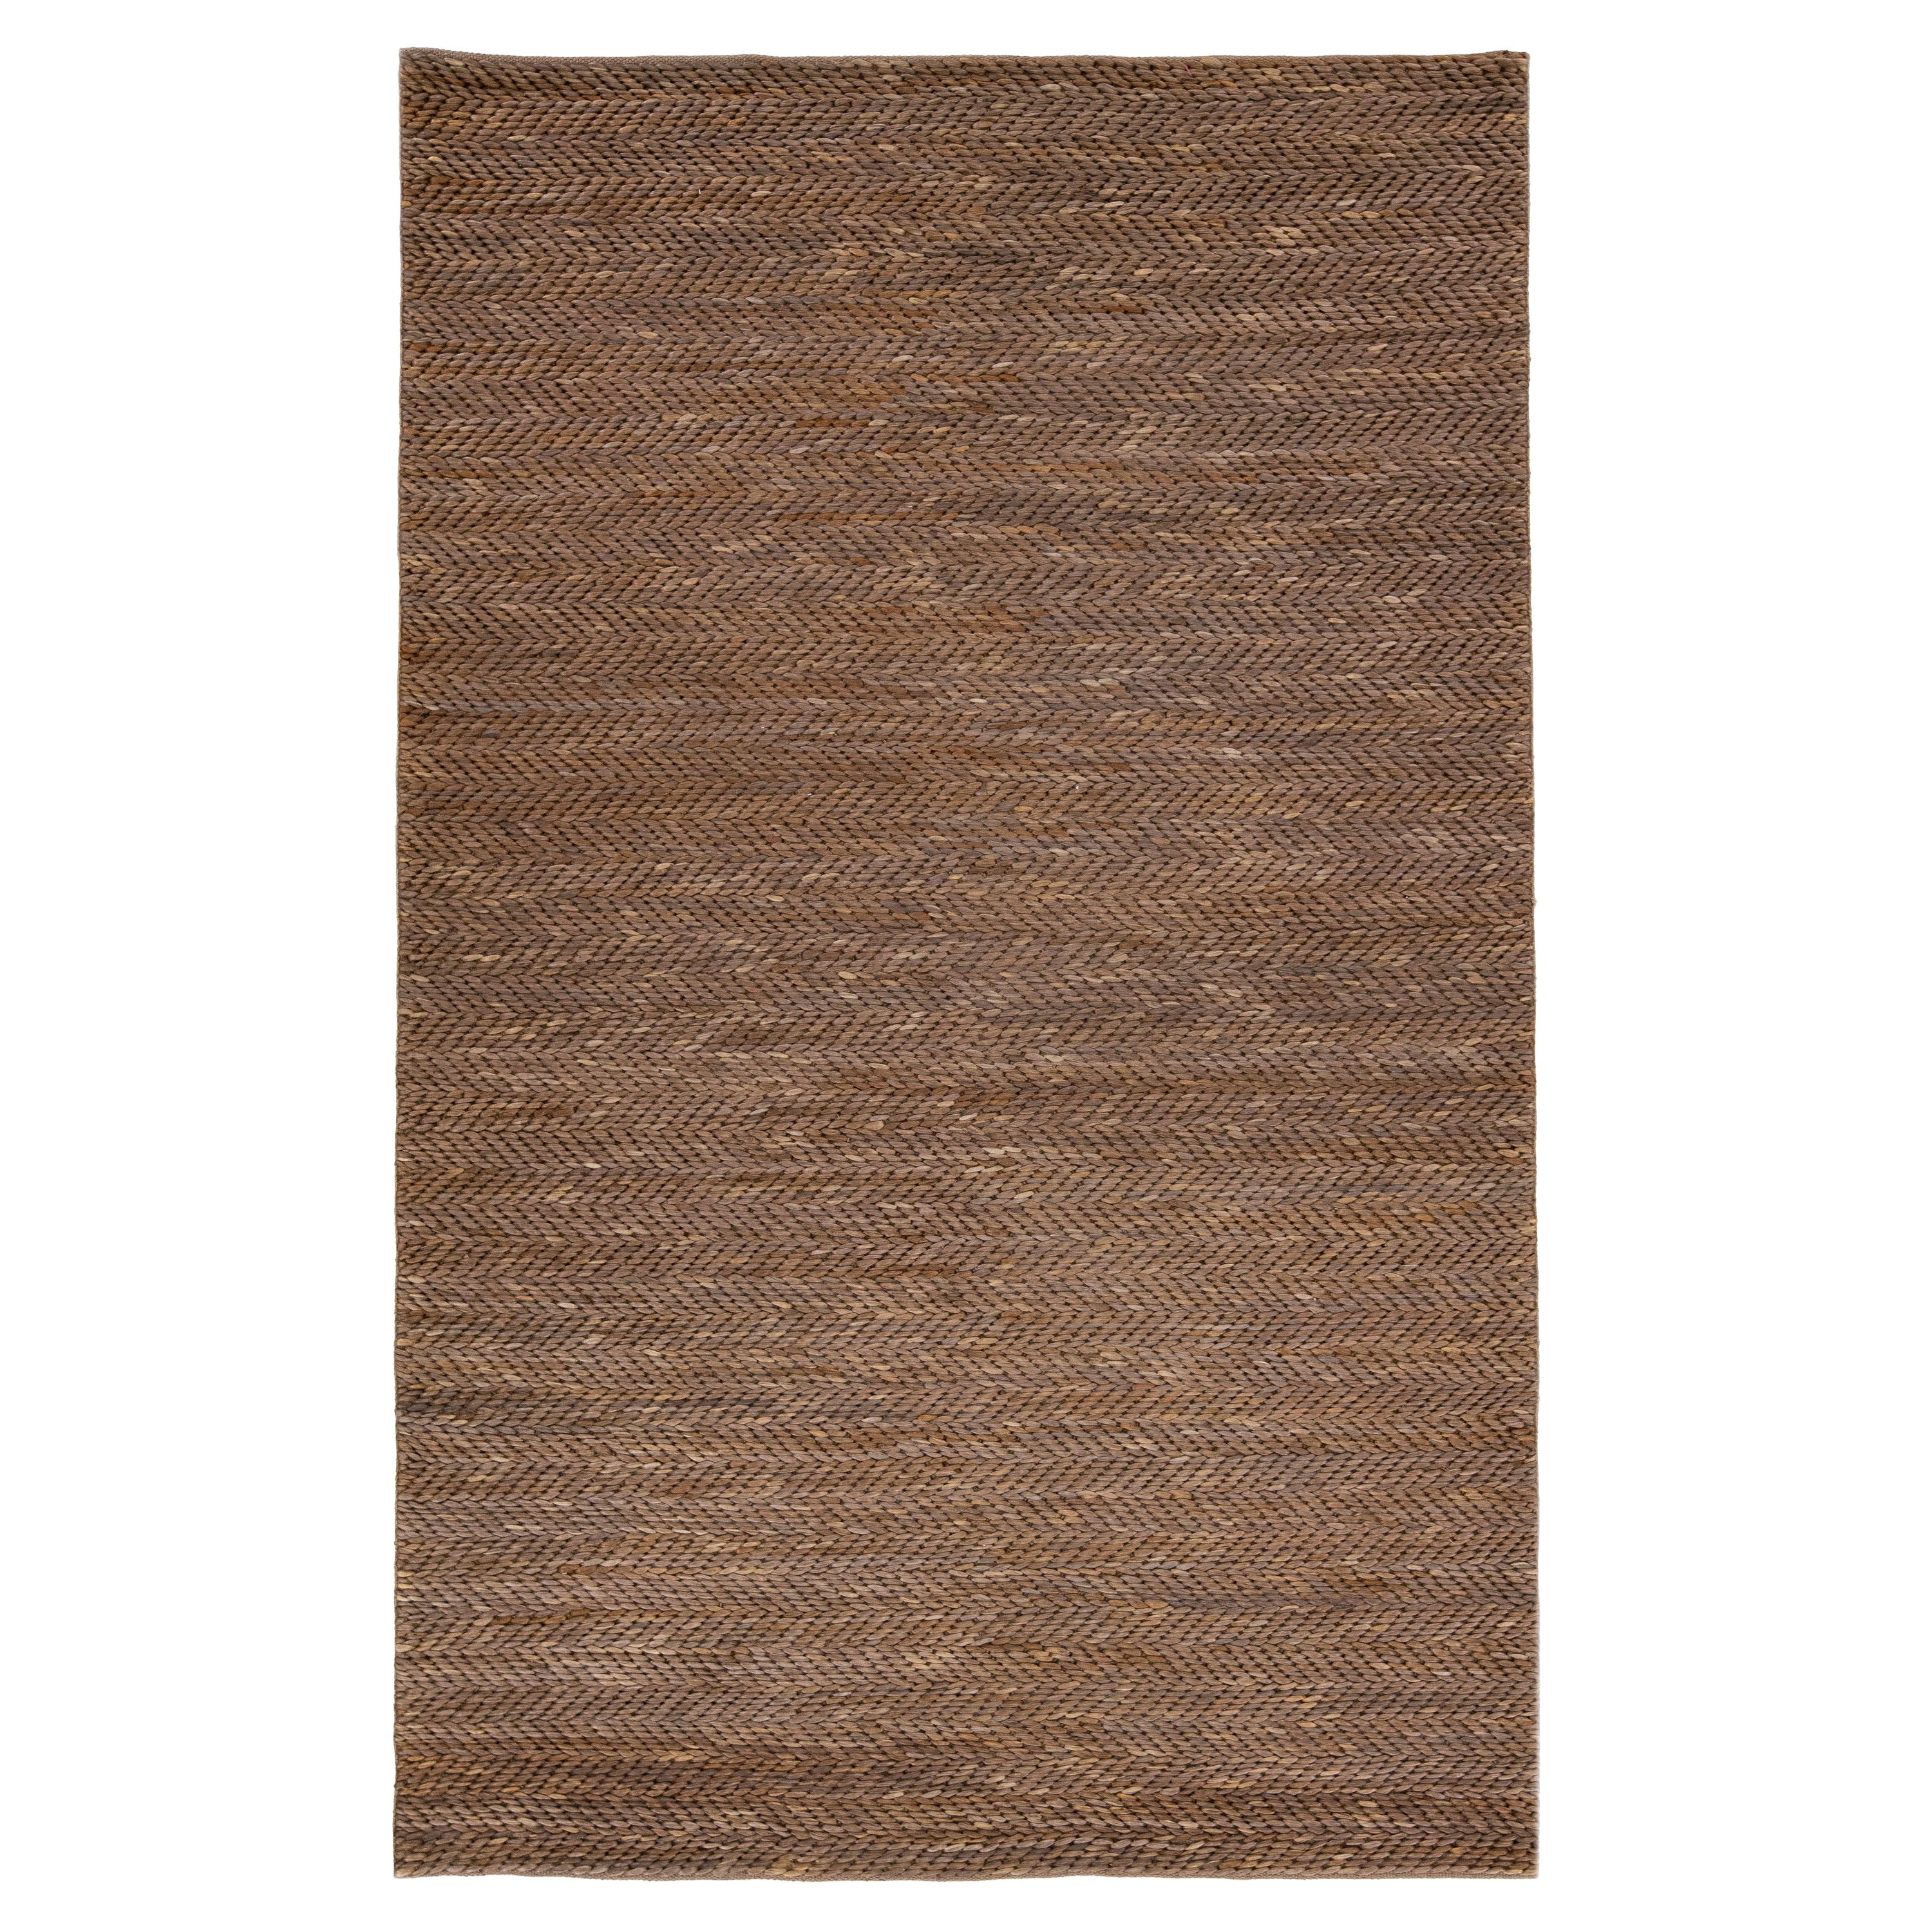 Tapis de sol moderne en coton et jute, tissé à la main, de texture naturelle, de couleur Brown